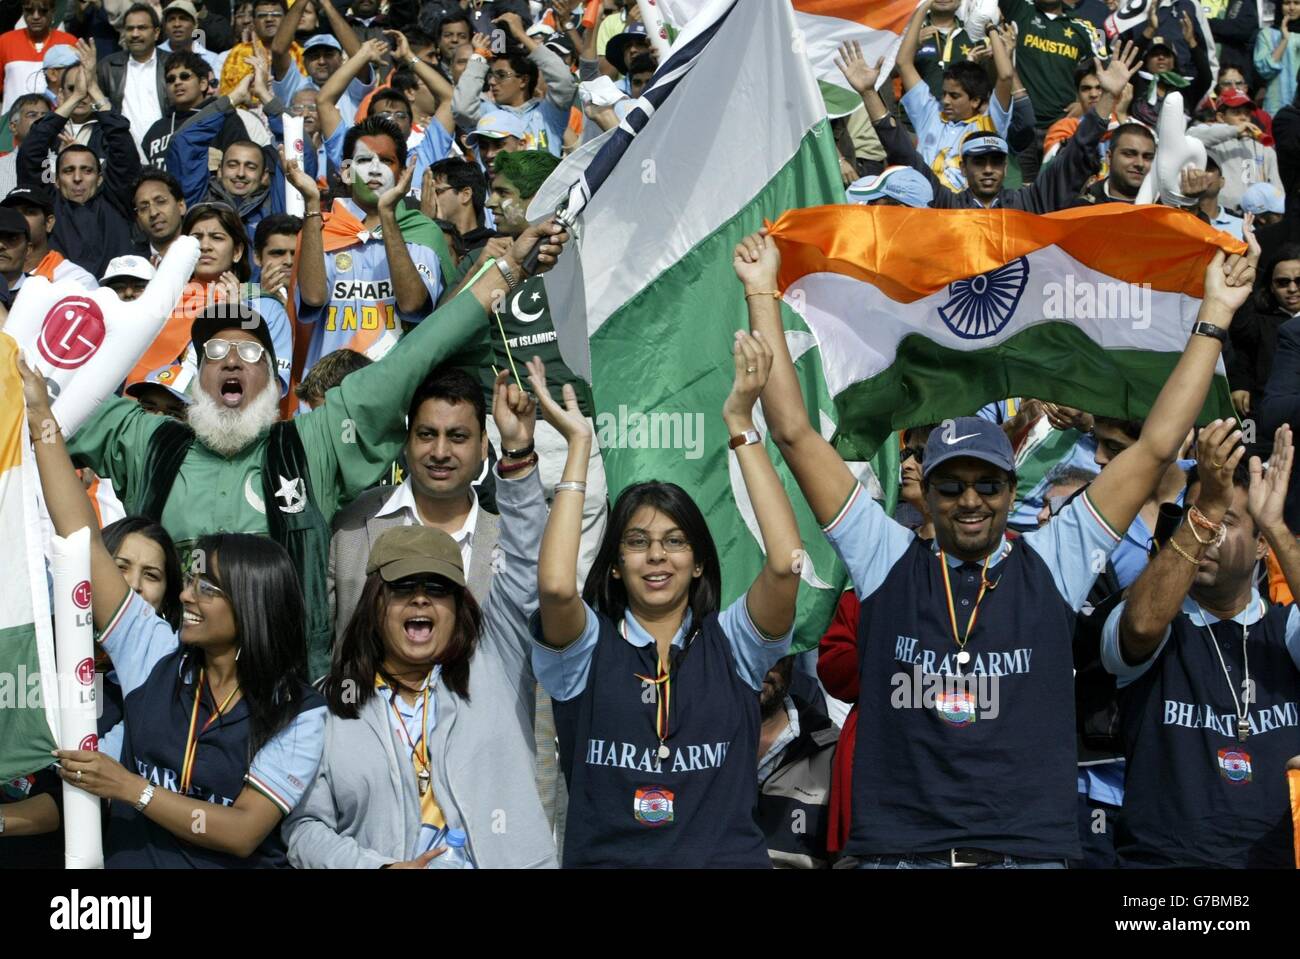 Tifoso pakistano, Cha Cha (zio) Cricket (centro, sinistra), celebra tra i tifosi indiani di cricket durante la partita I.C.C Champions Trophy tra Pakistan e India a Edgbaston, Birmingham. Foto Stock